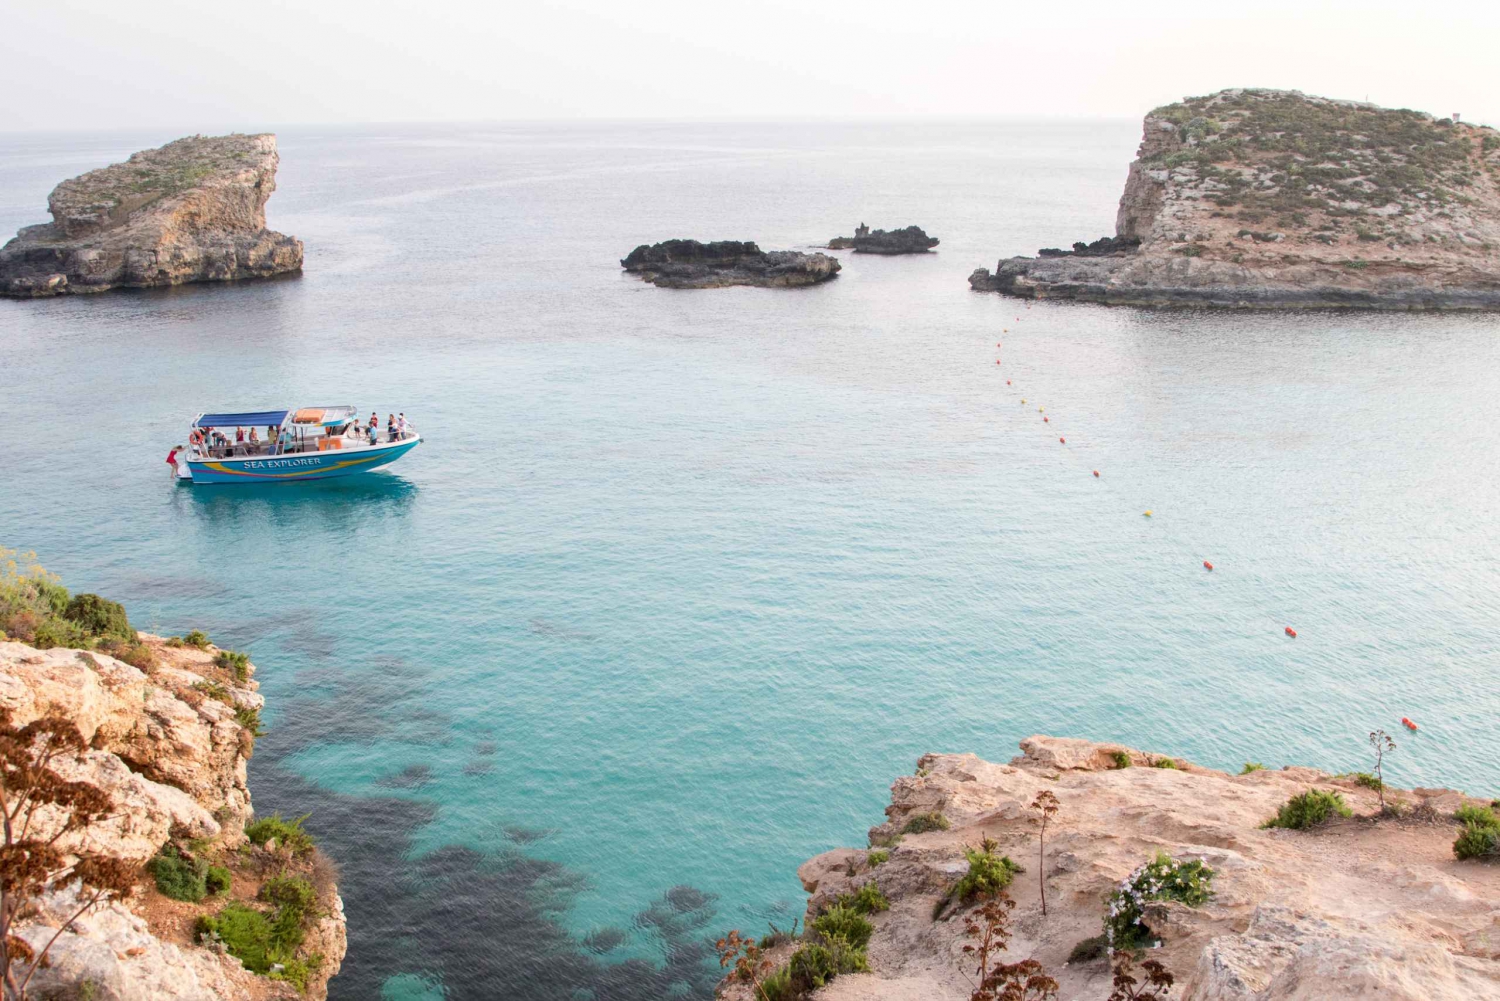 Malta: Private Customizable Boat Charter along the Coastline